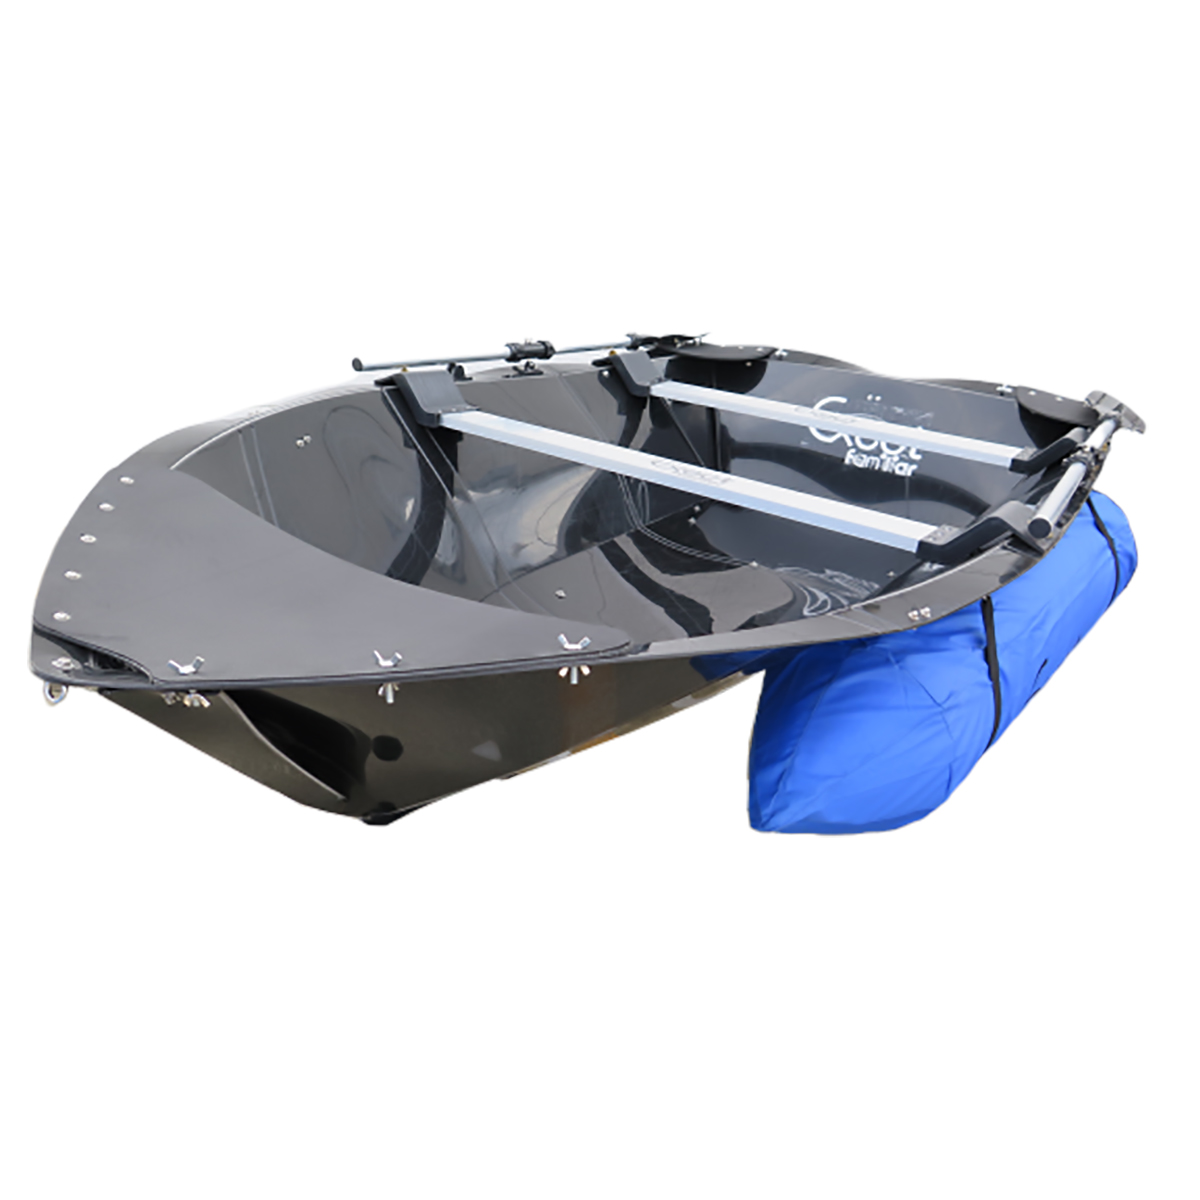 楽天市場 折りたたみ ボート フロート付き 折りたたみ式 Ex230zx Folding Boat 高分子ポリエチレン素材使用 Exect Familiar アウトドア 工具